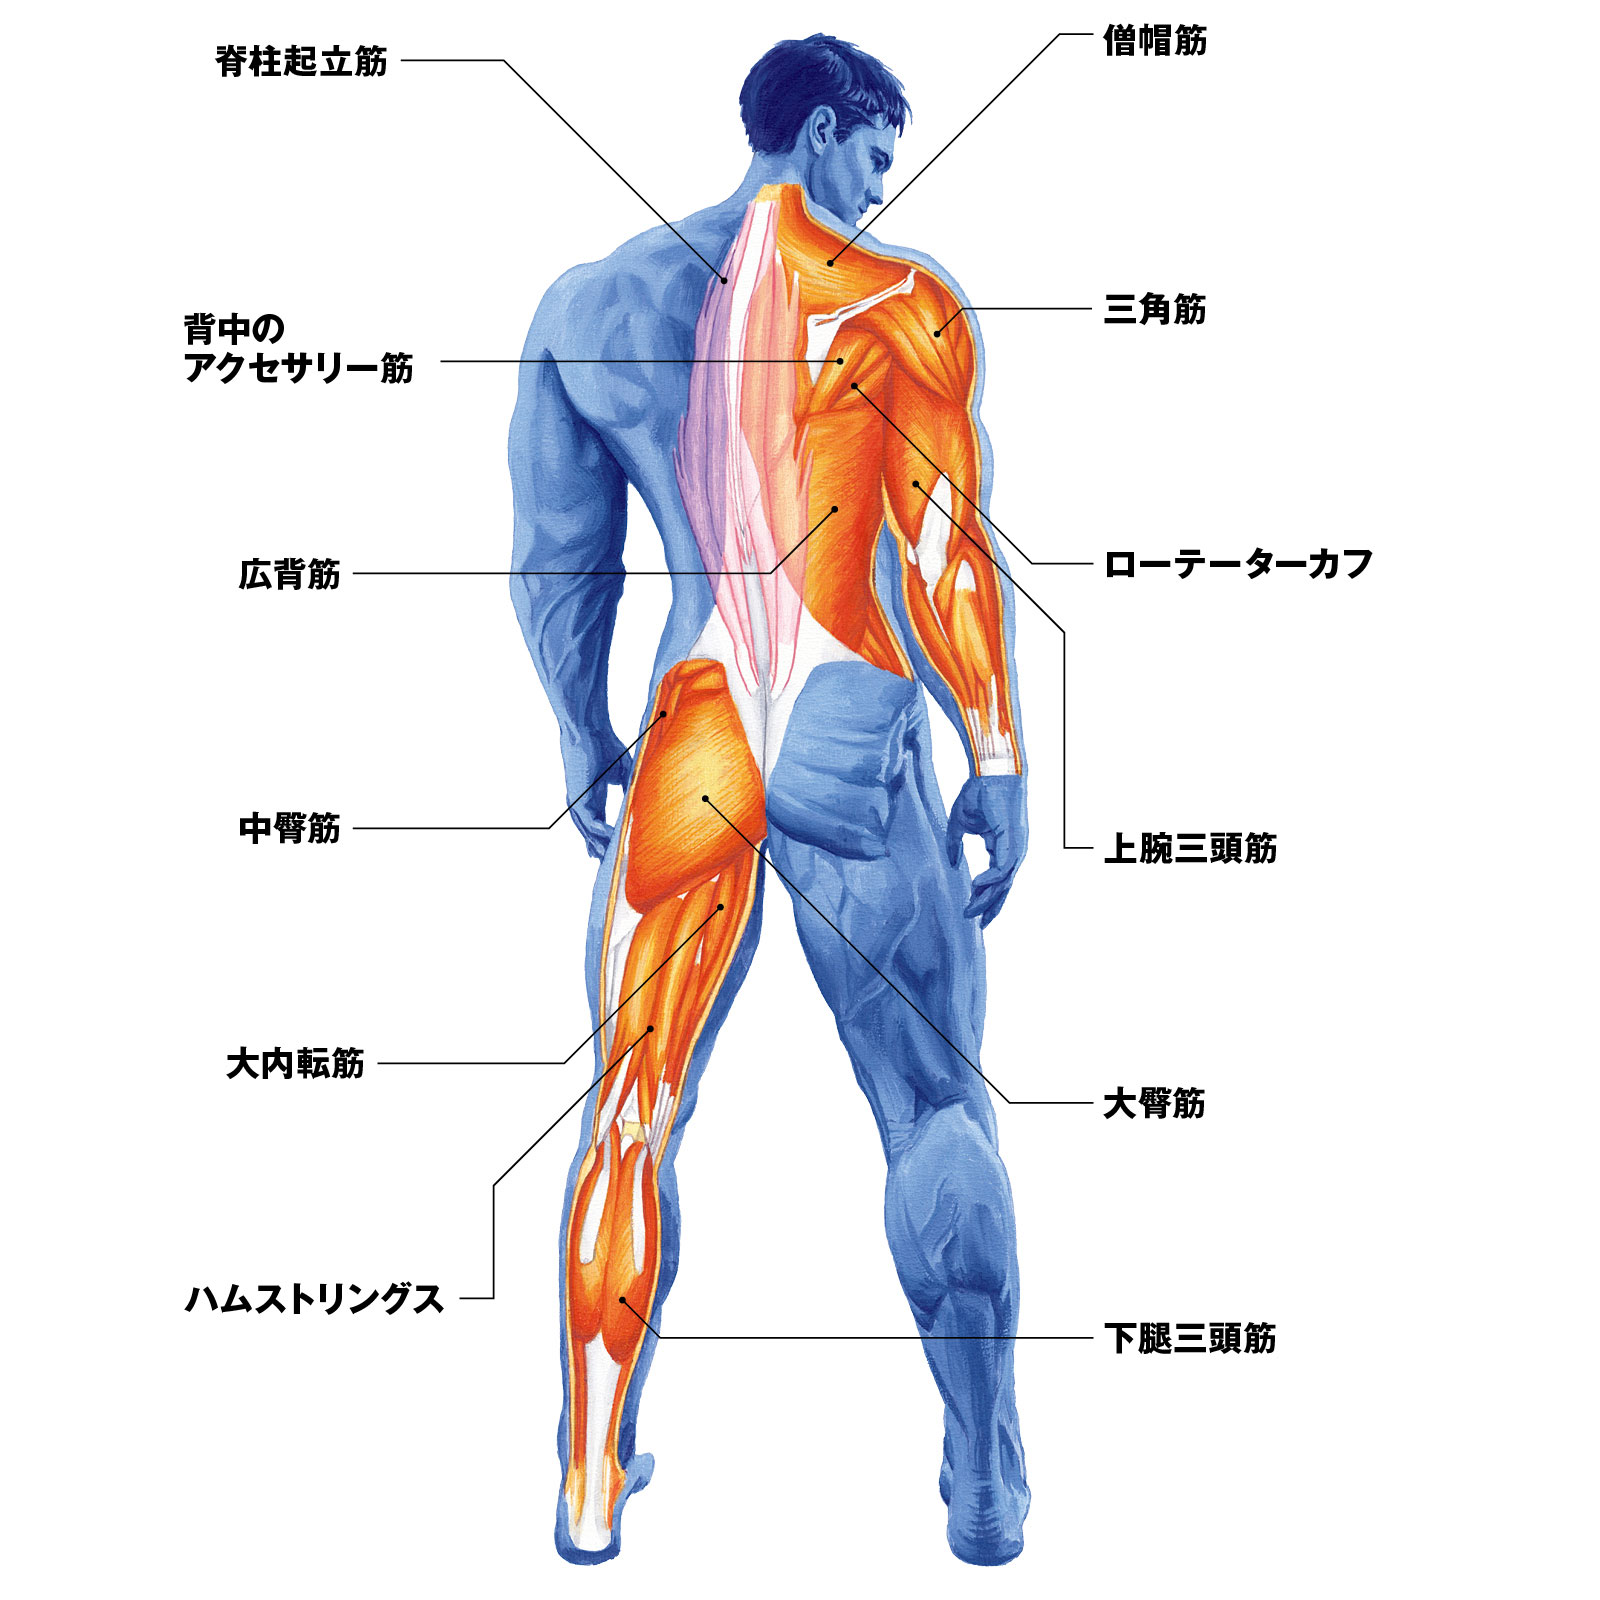 ざんねんな背面を解決するカギはこの筋肉だ 人体図